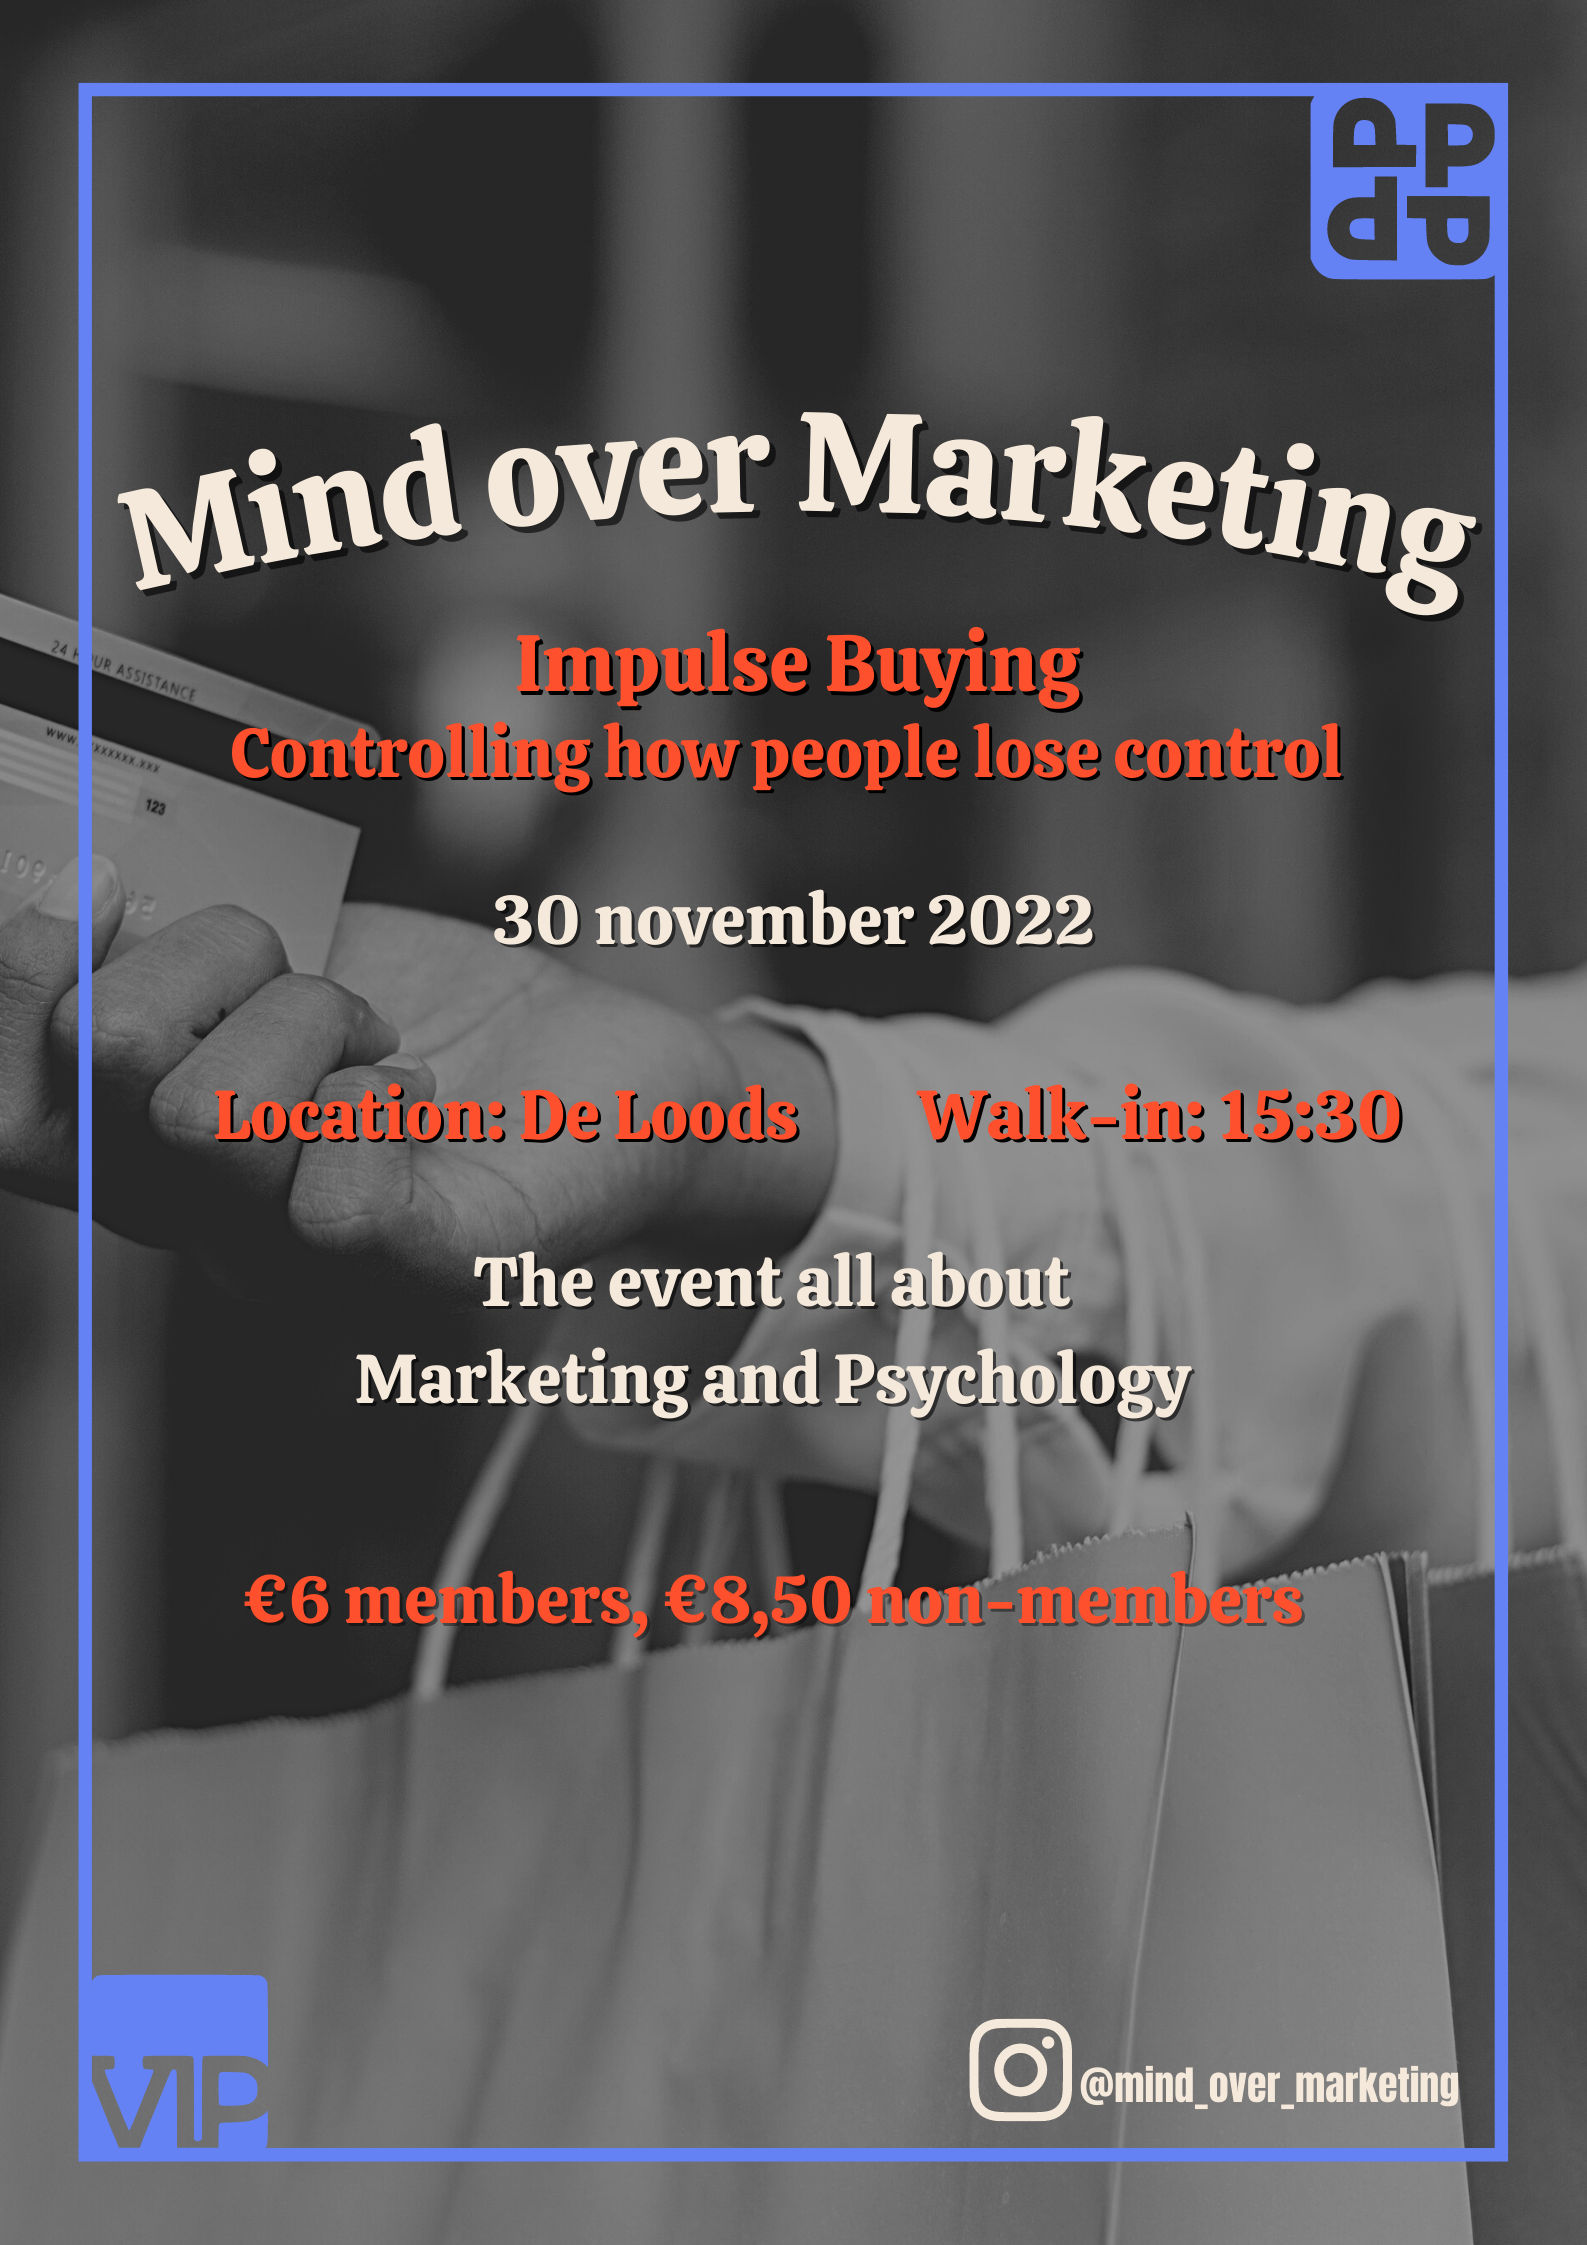 Mind over Marketing: Impulse Buying